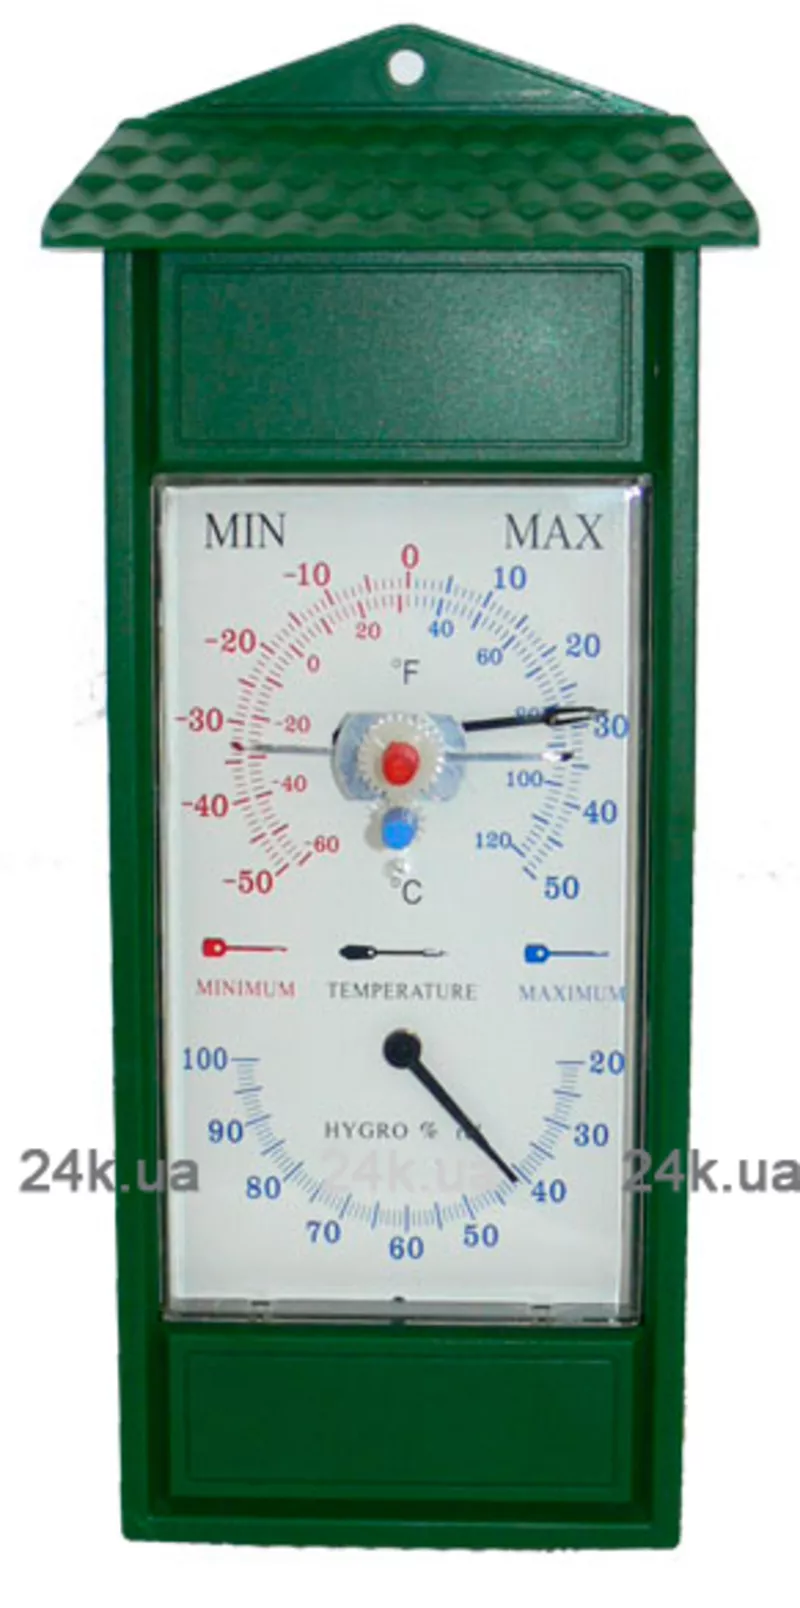 Термогигрометр Konus MIN-MAX2